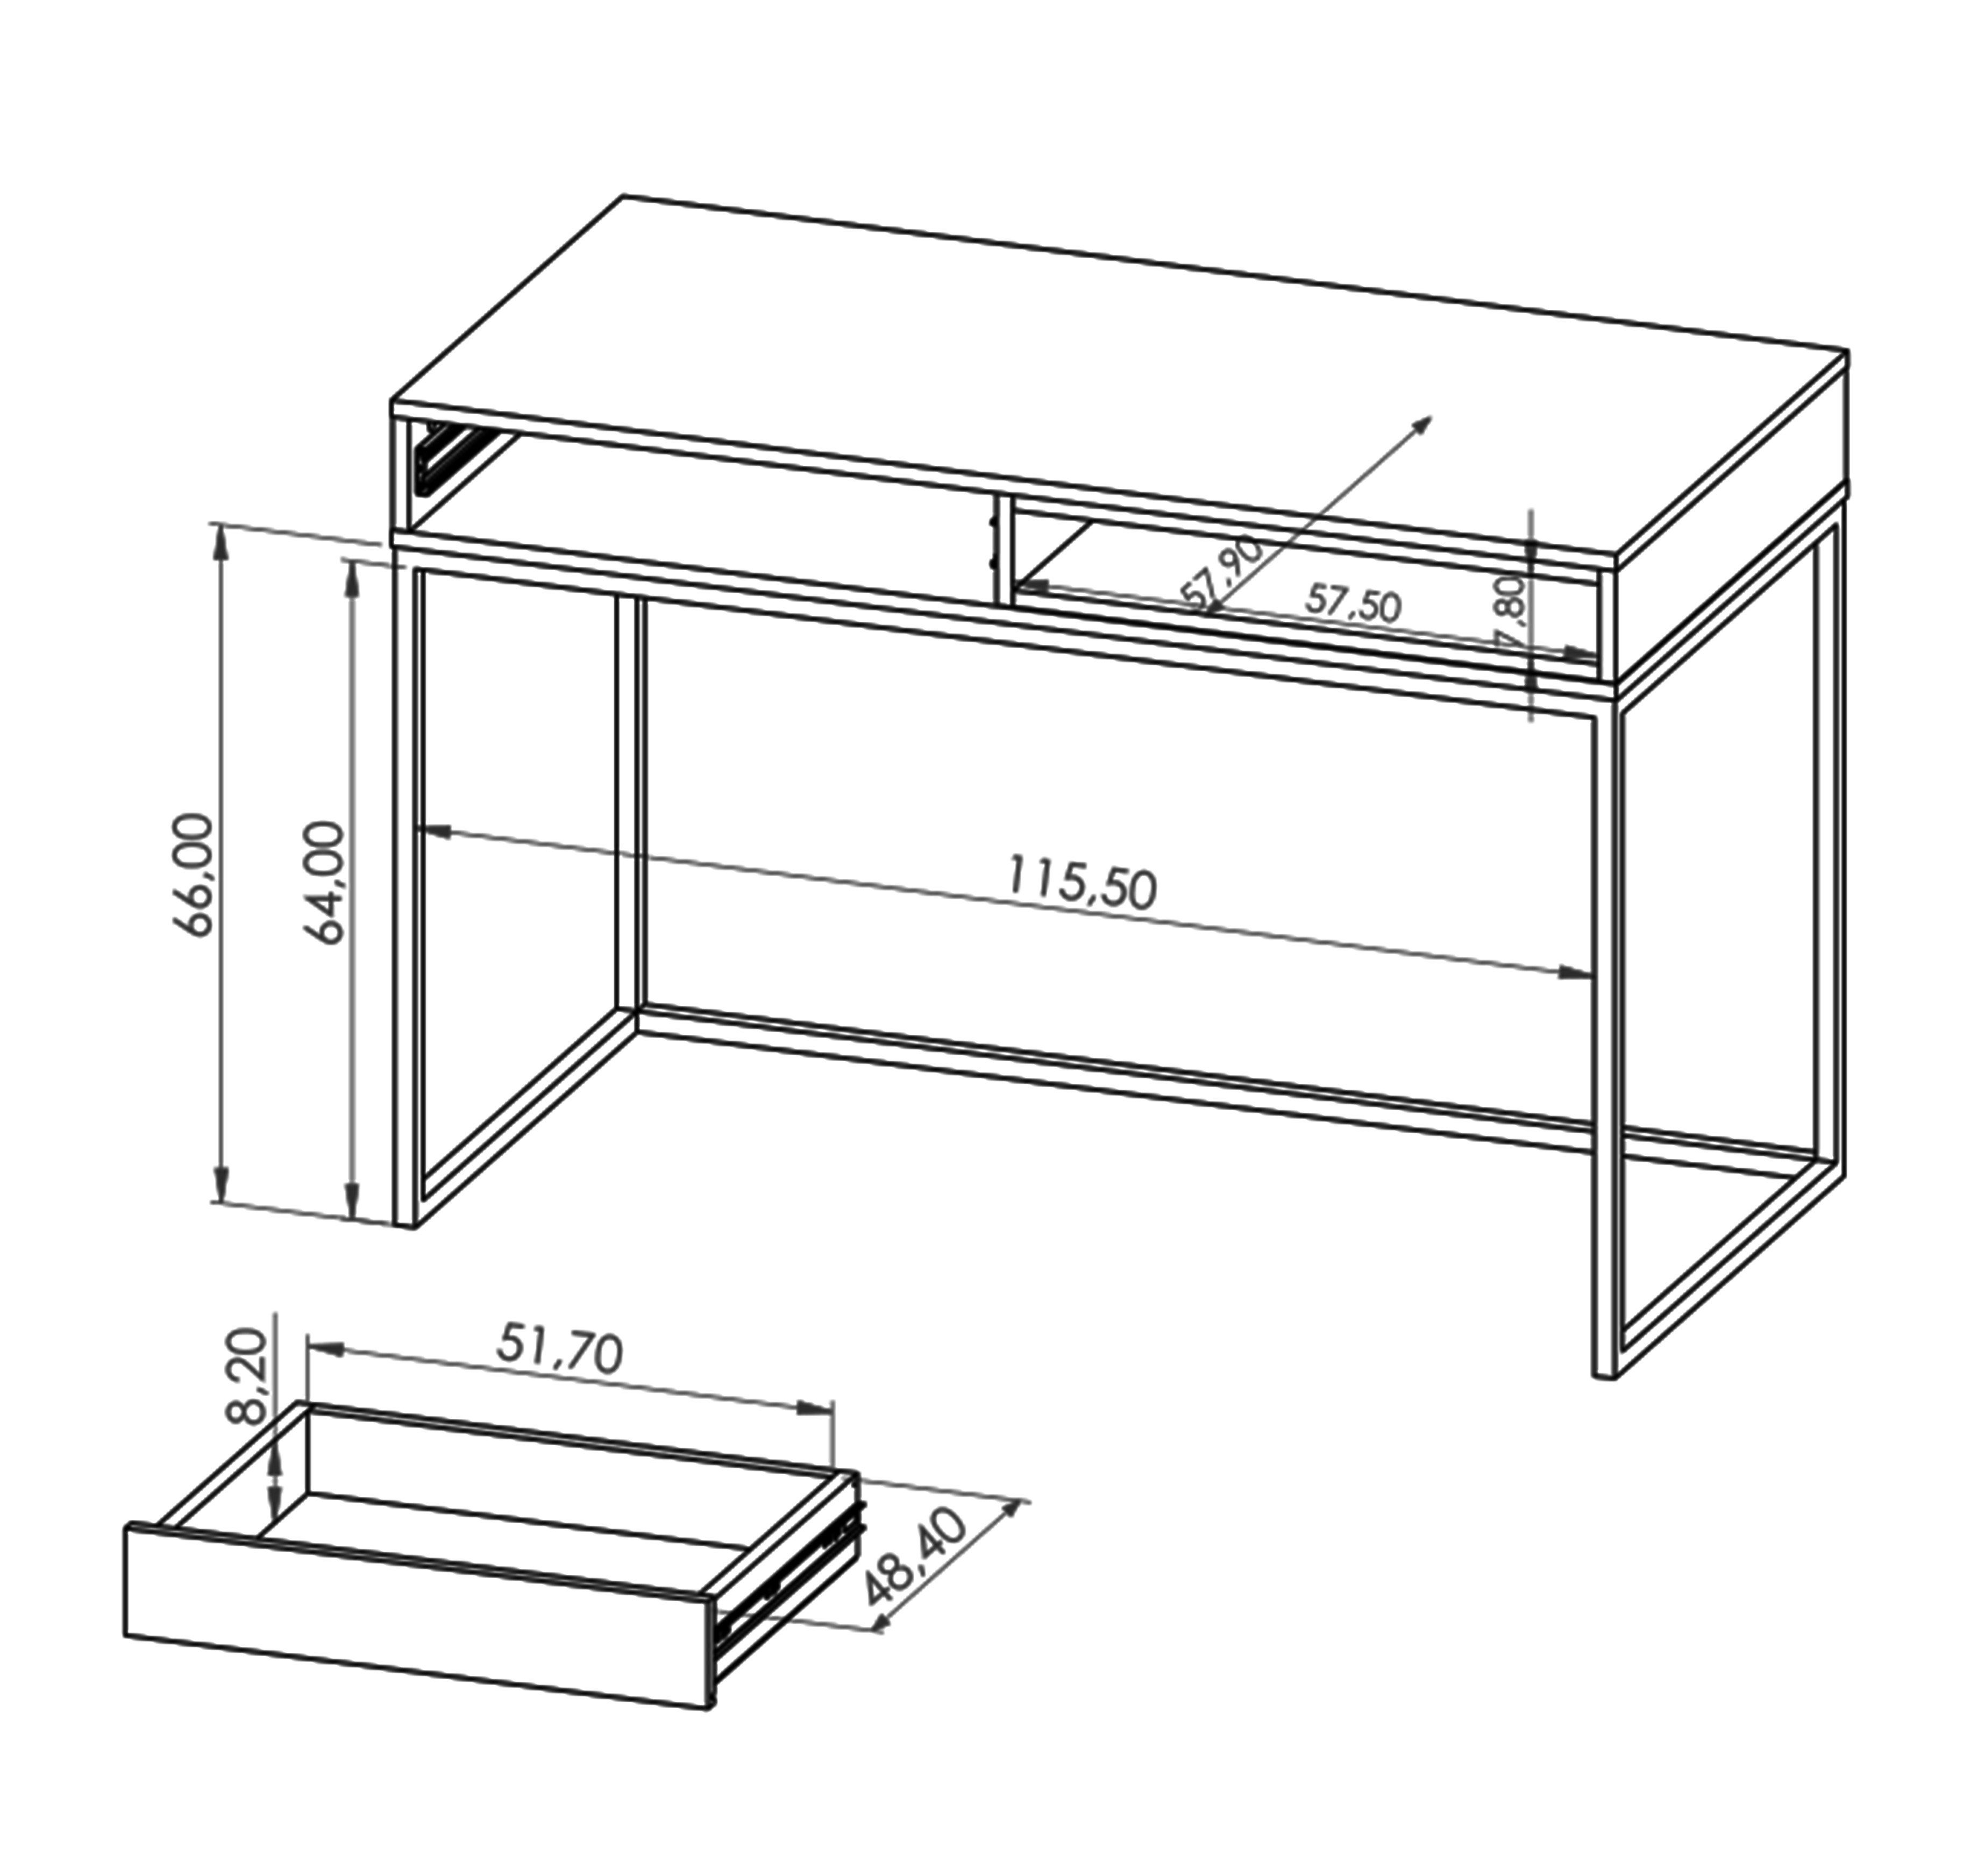 RELIO Arbeitsplatz T60 B120 Ablage, Schreibtisch Artisan/Schwarz Scandi-Design, mit H80,5 x Schublade, cm PC-Tisch x Furnix